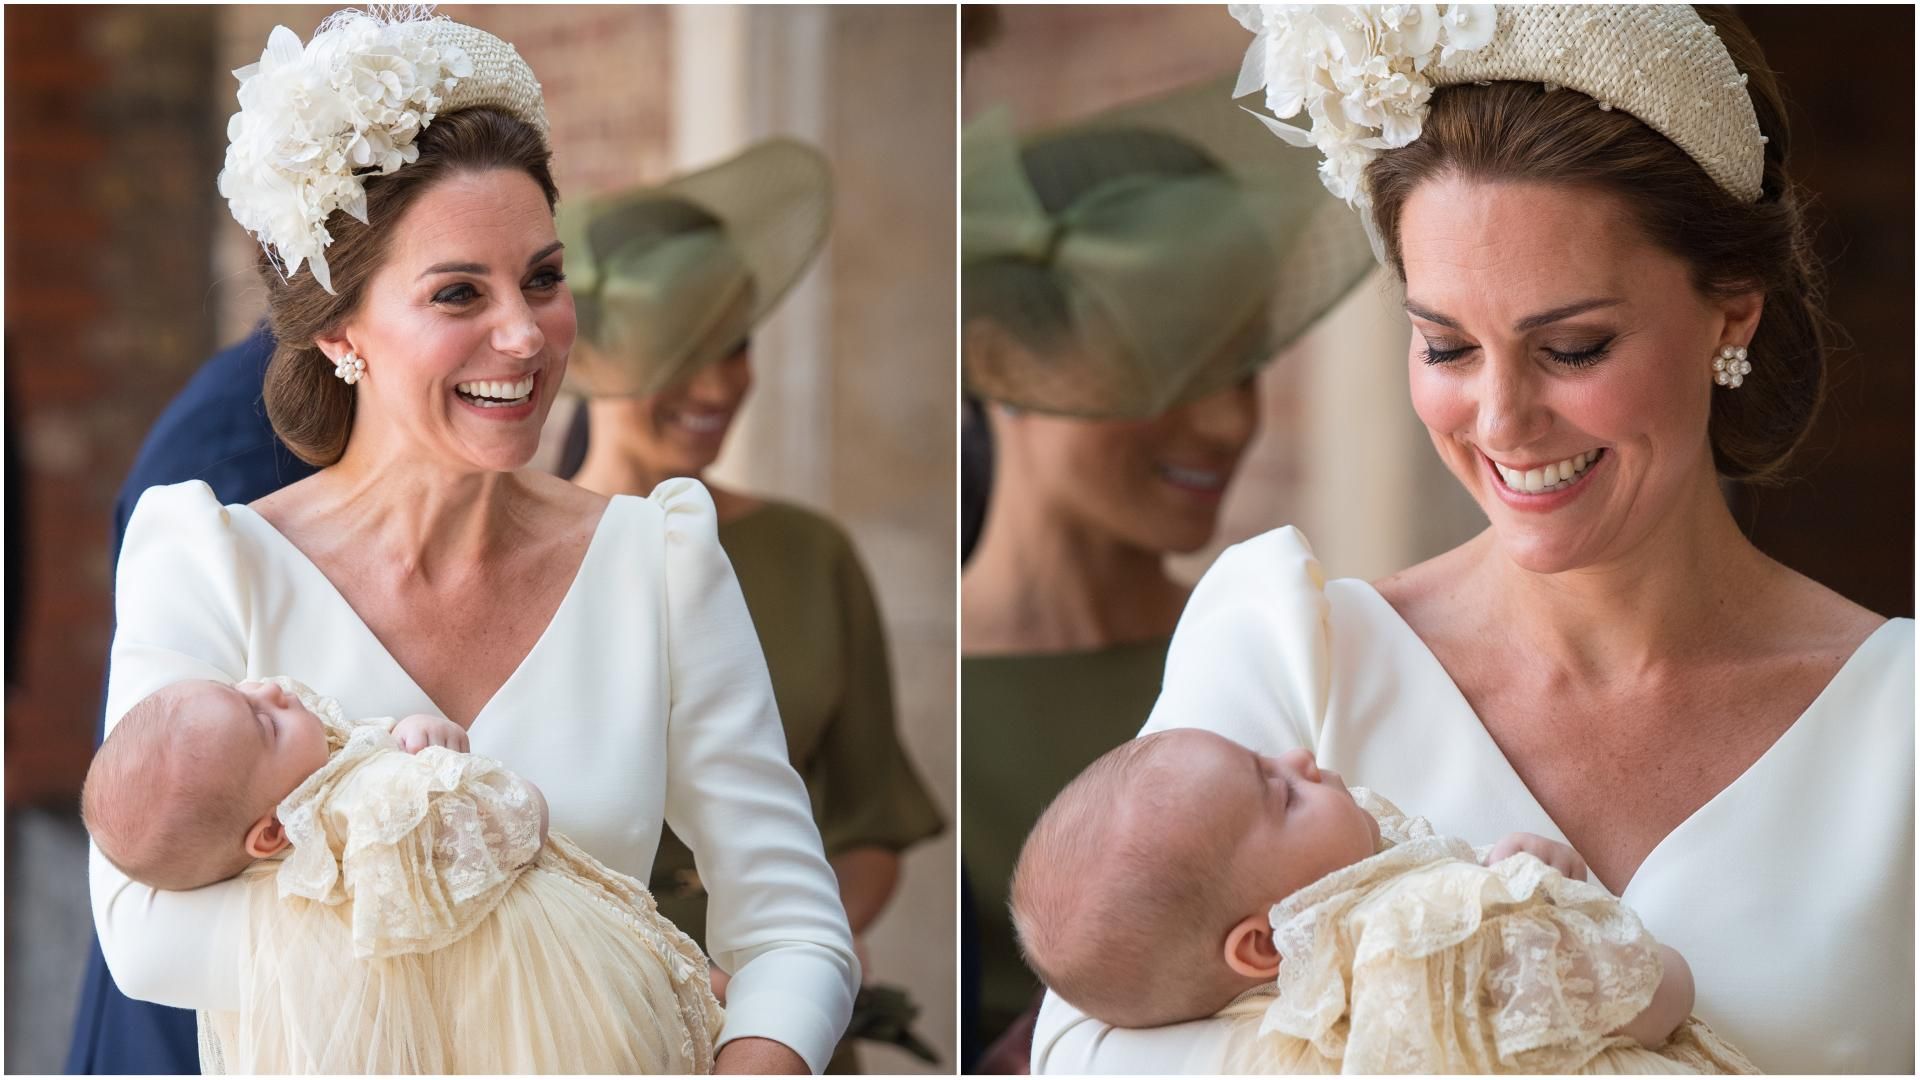 Кейт Міддлтон одягнула традиційну світлу сукню на хрестини принца Луї: фото